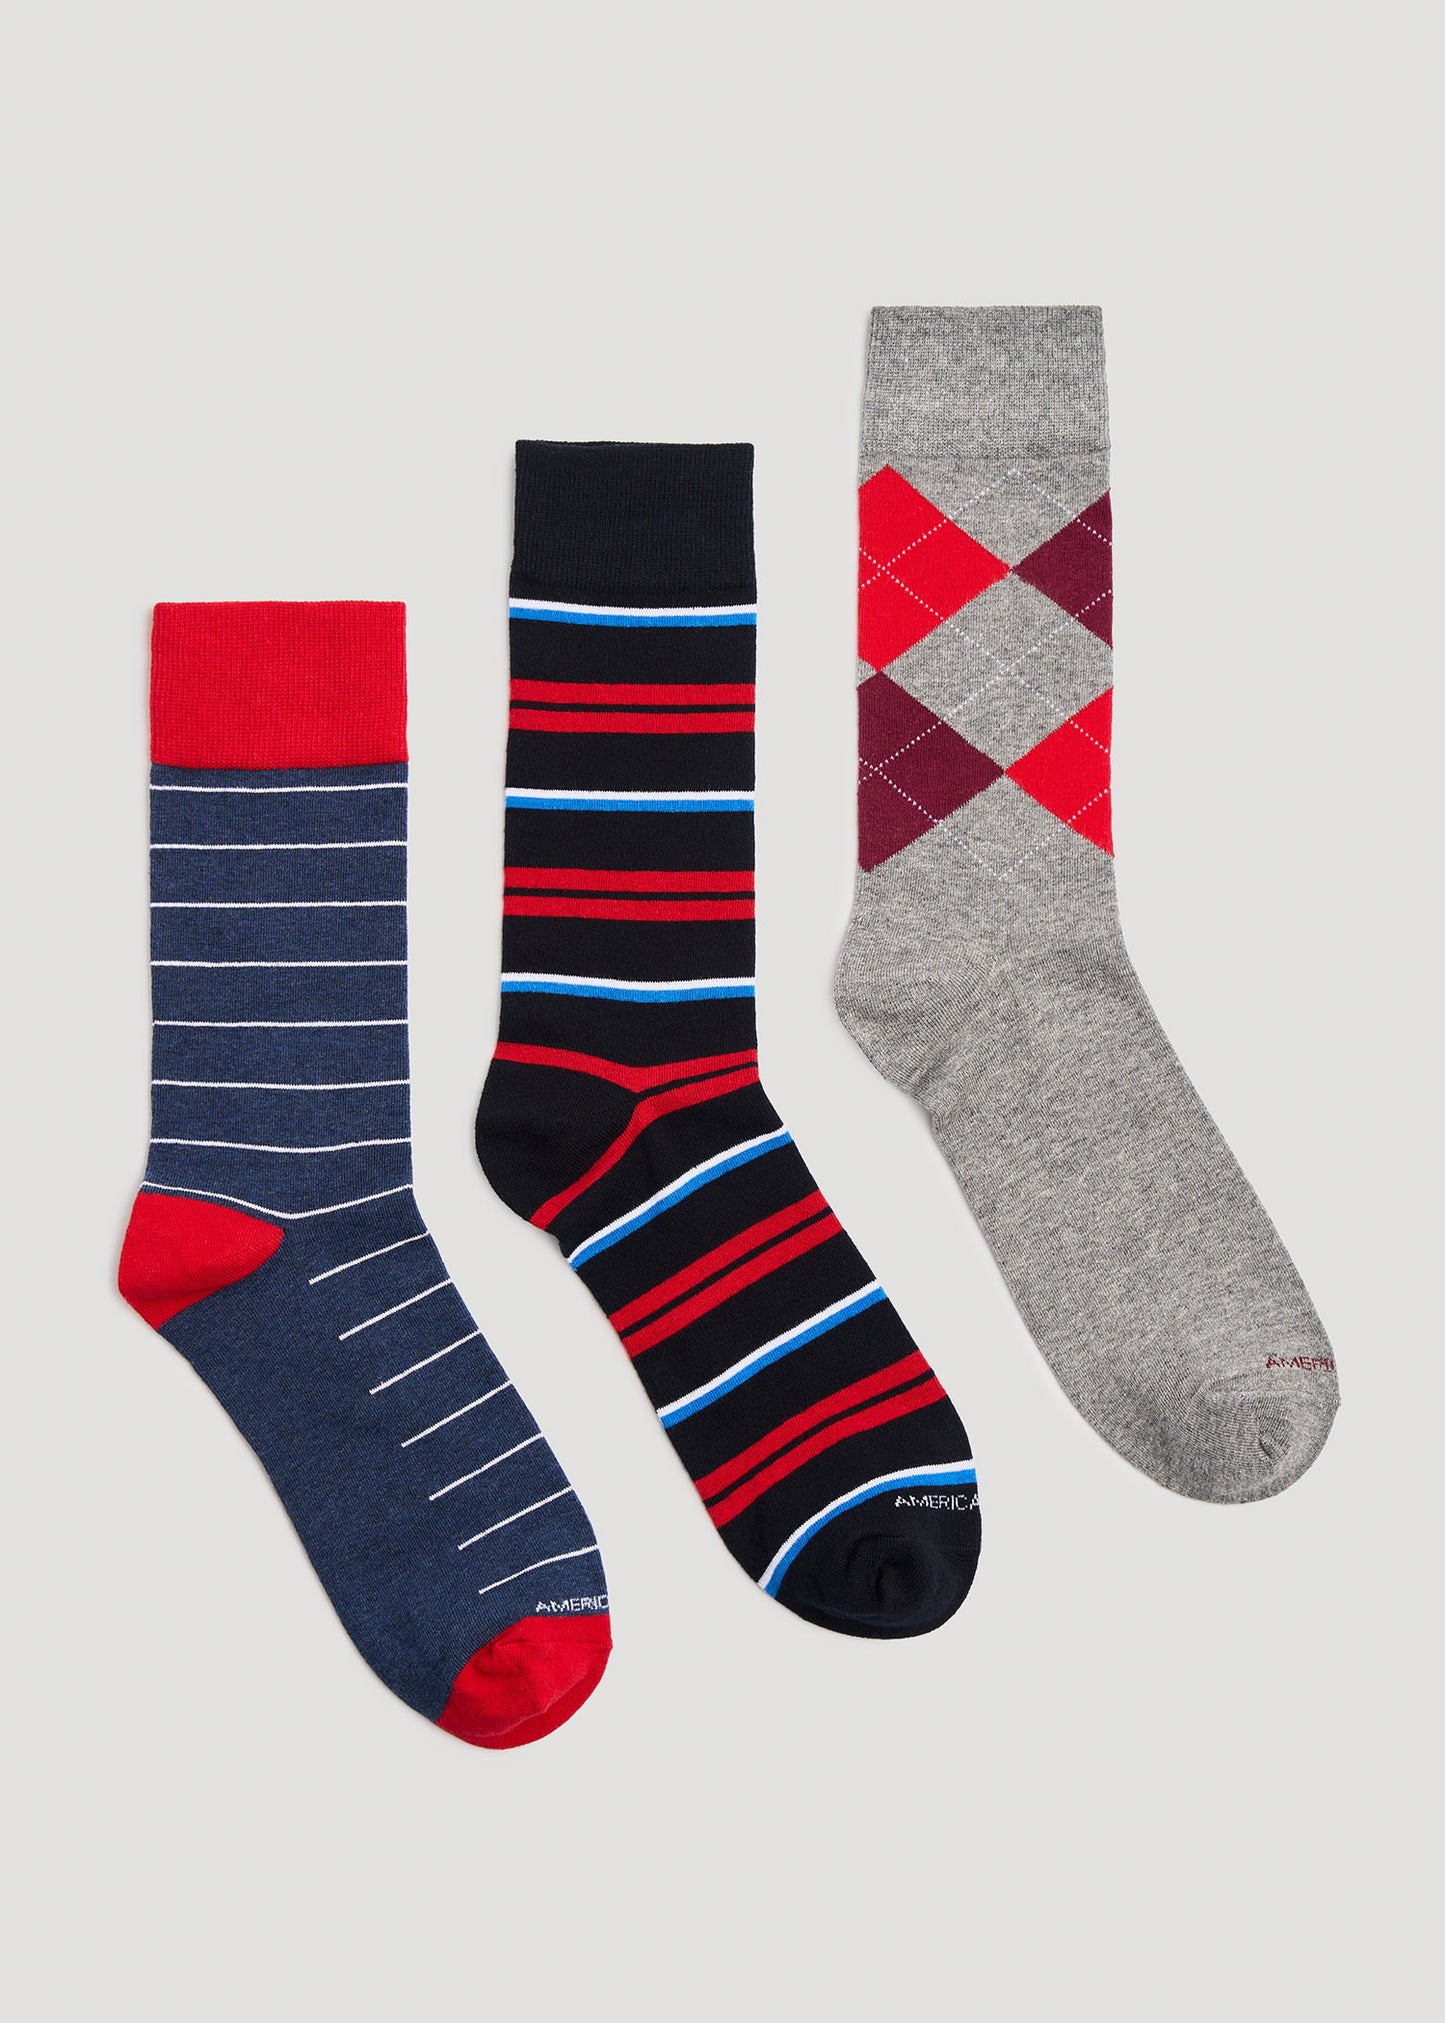     American-Tall-Mens-XL-Dress-Socks-Size-14-17-3-Pack-D-Detail2